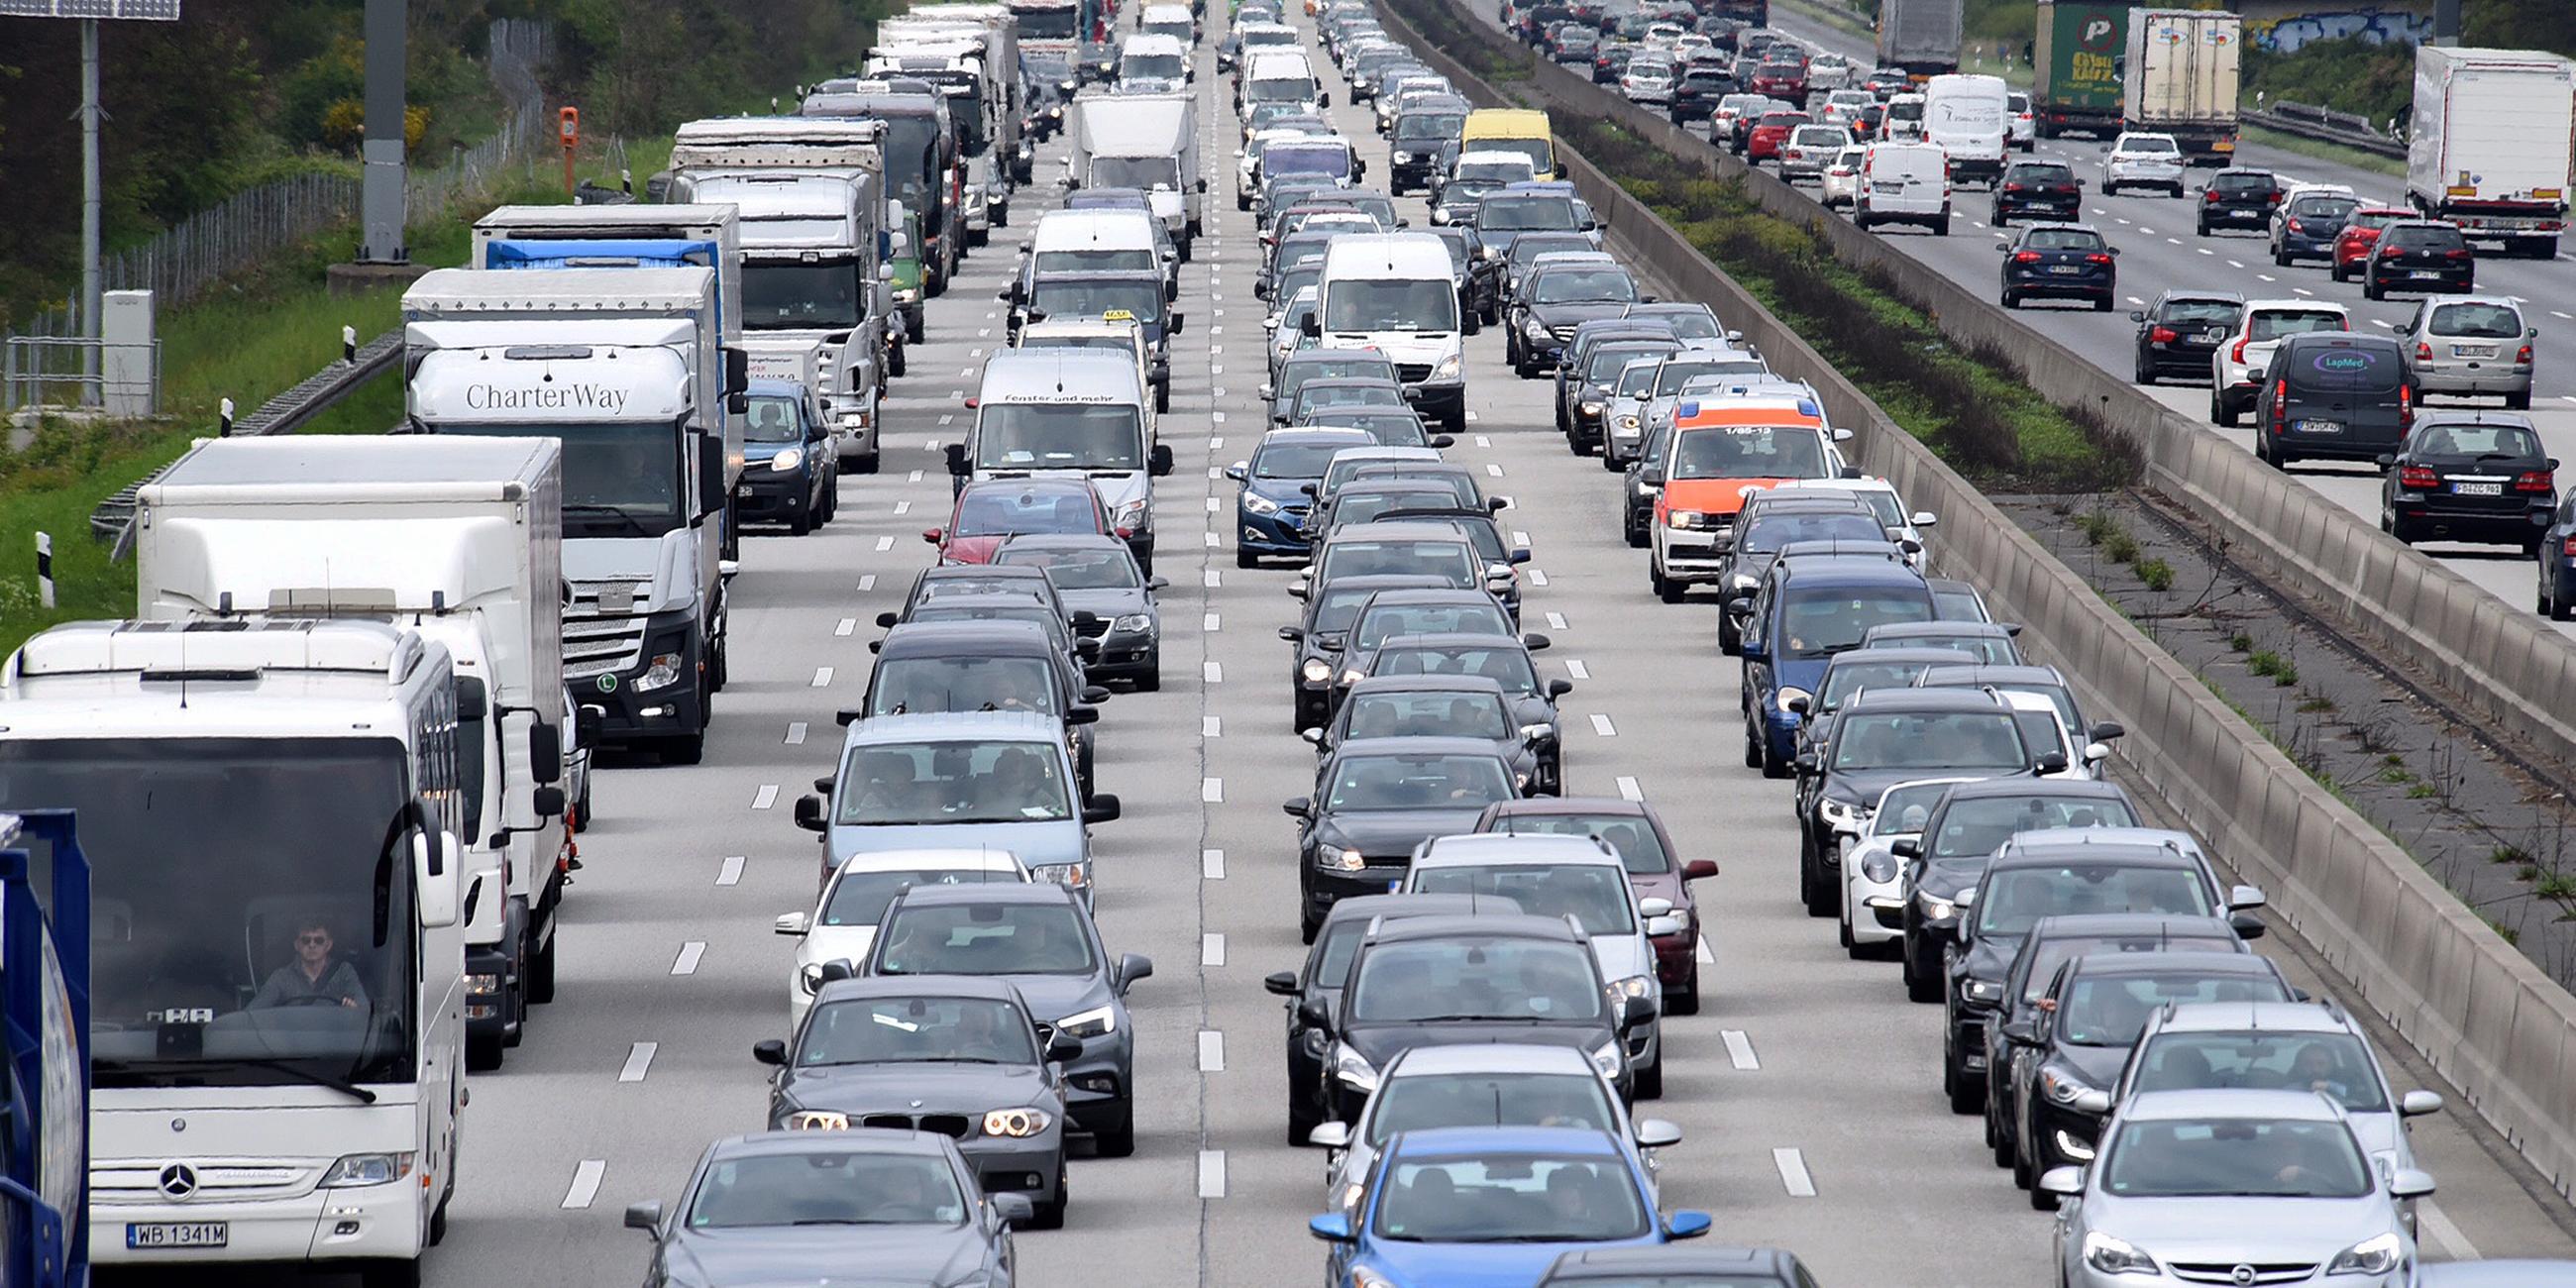 Archiv: Kilometerlang staut sich der Verkehr auf der Autobahn